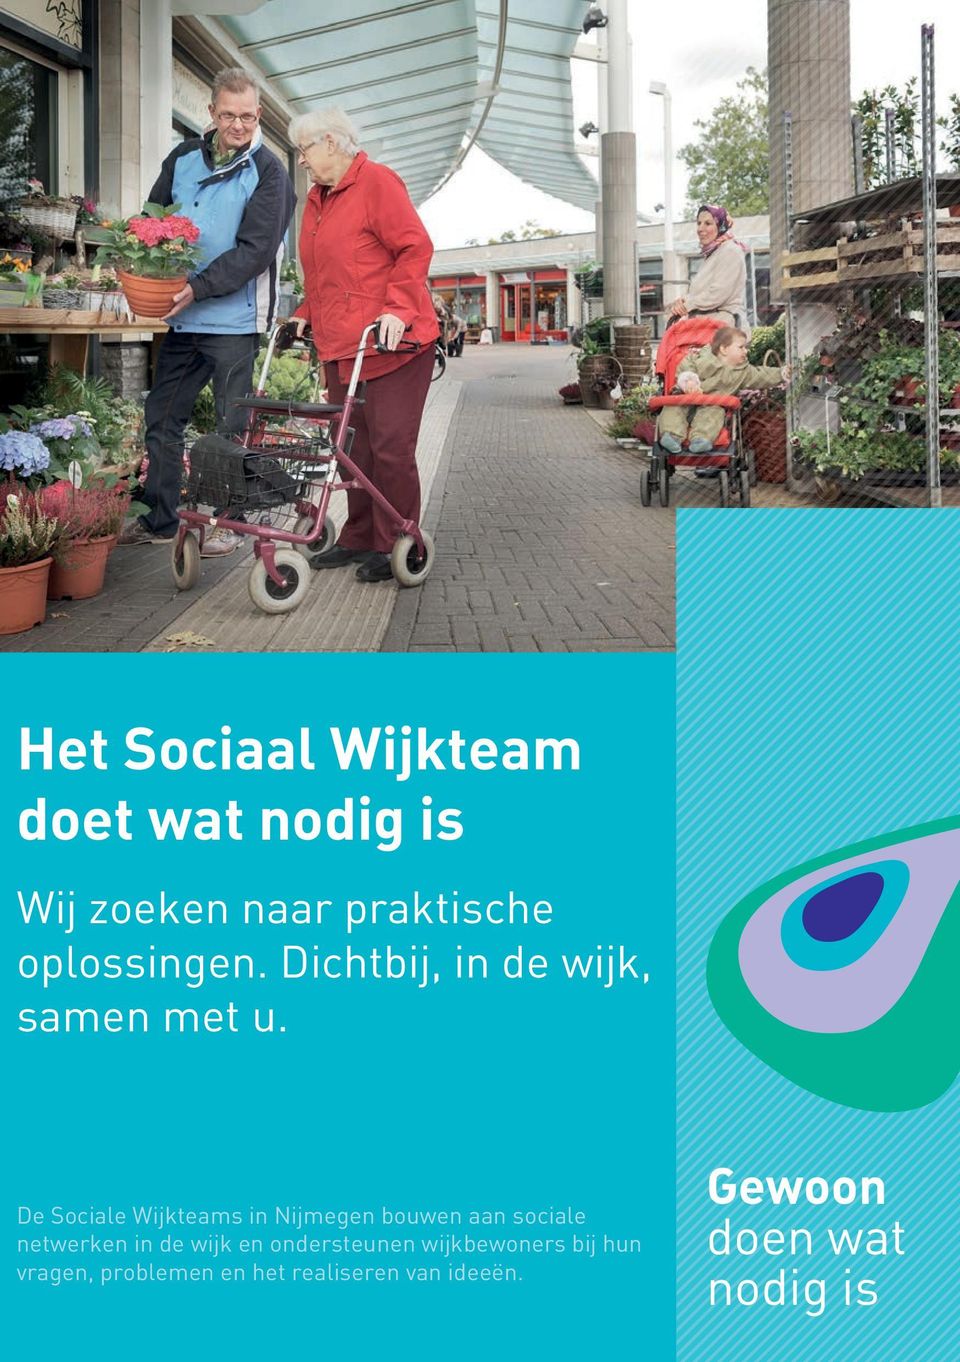 De Sociale Wijkteams in Nijmegen bouwen aan sociale netwerken in de wijk